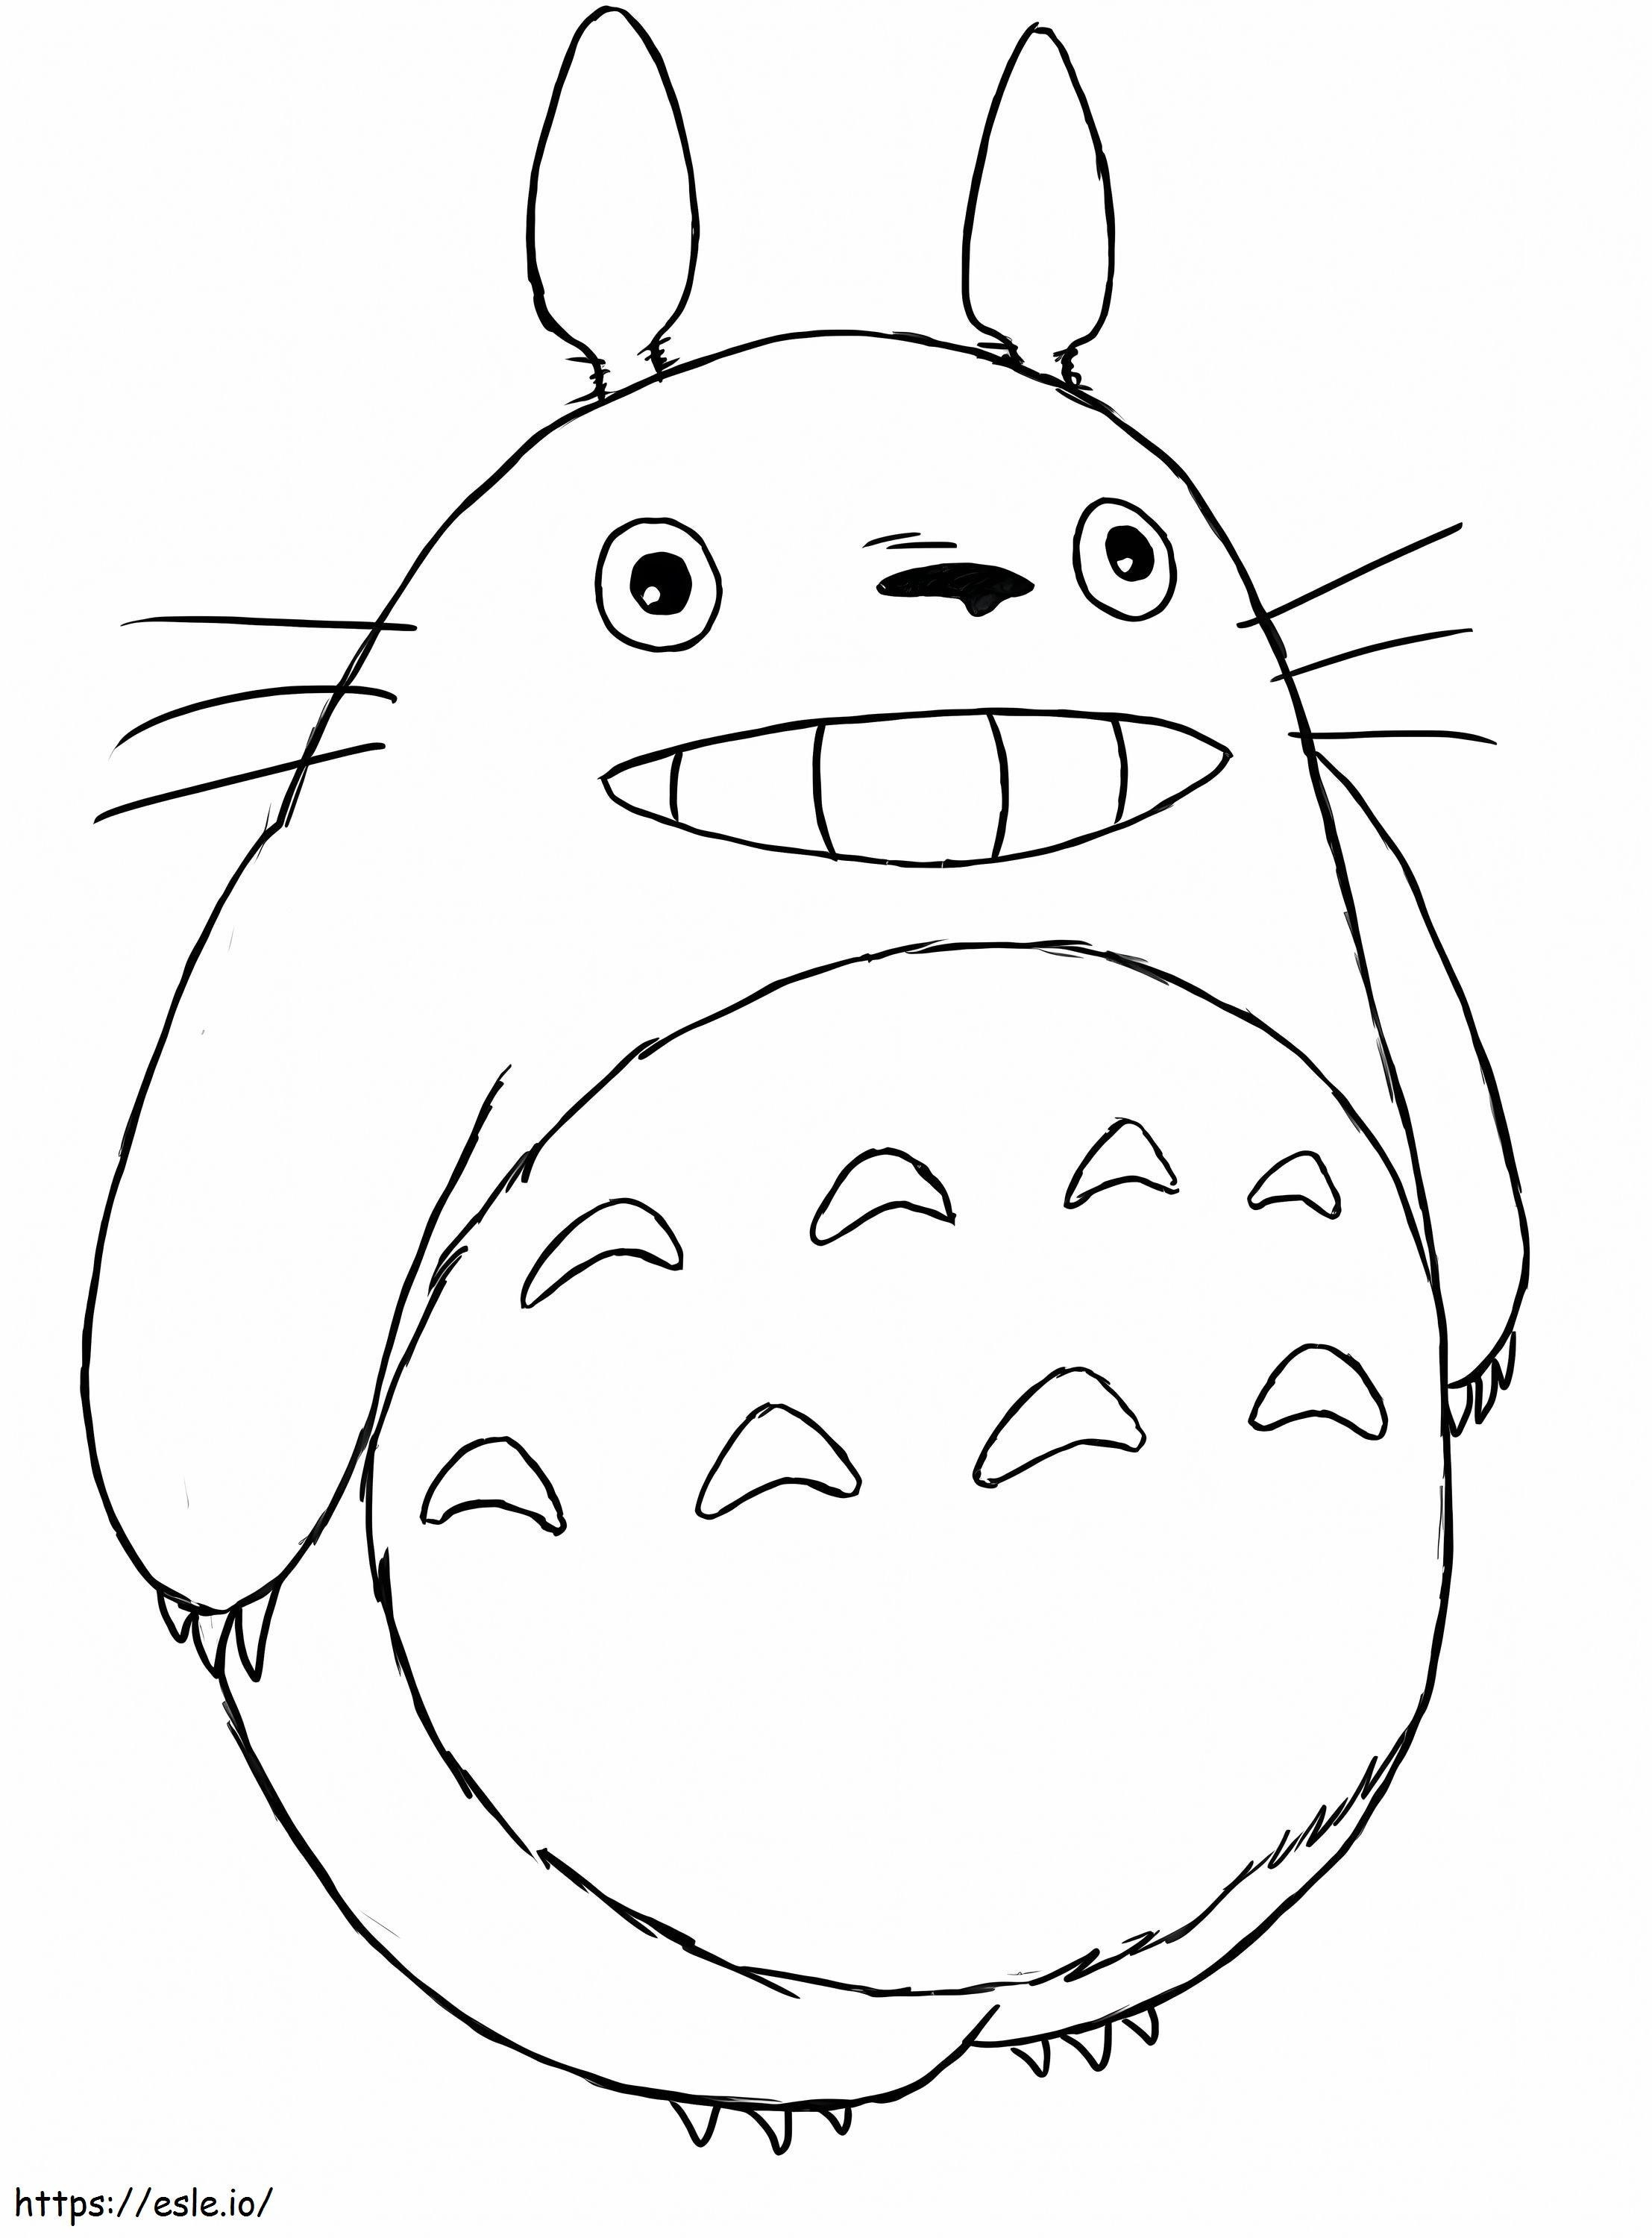 1552895488 760B8288 760B8288 Luxury Totoro Kostenloser Download von Coloriage Totoro ausmalbilder